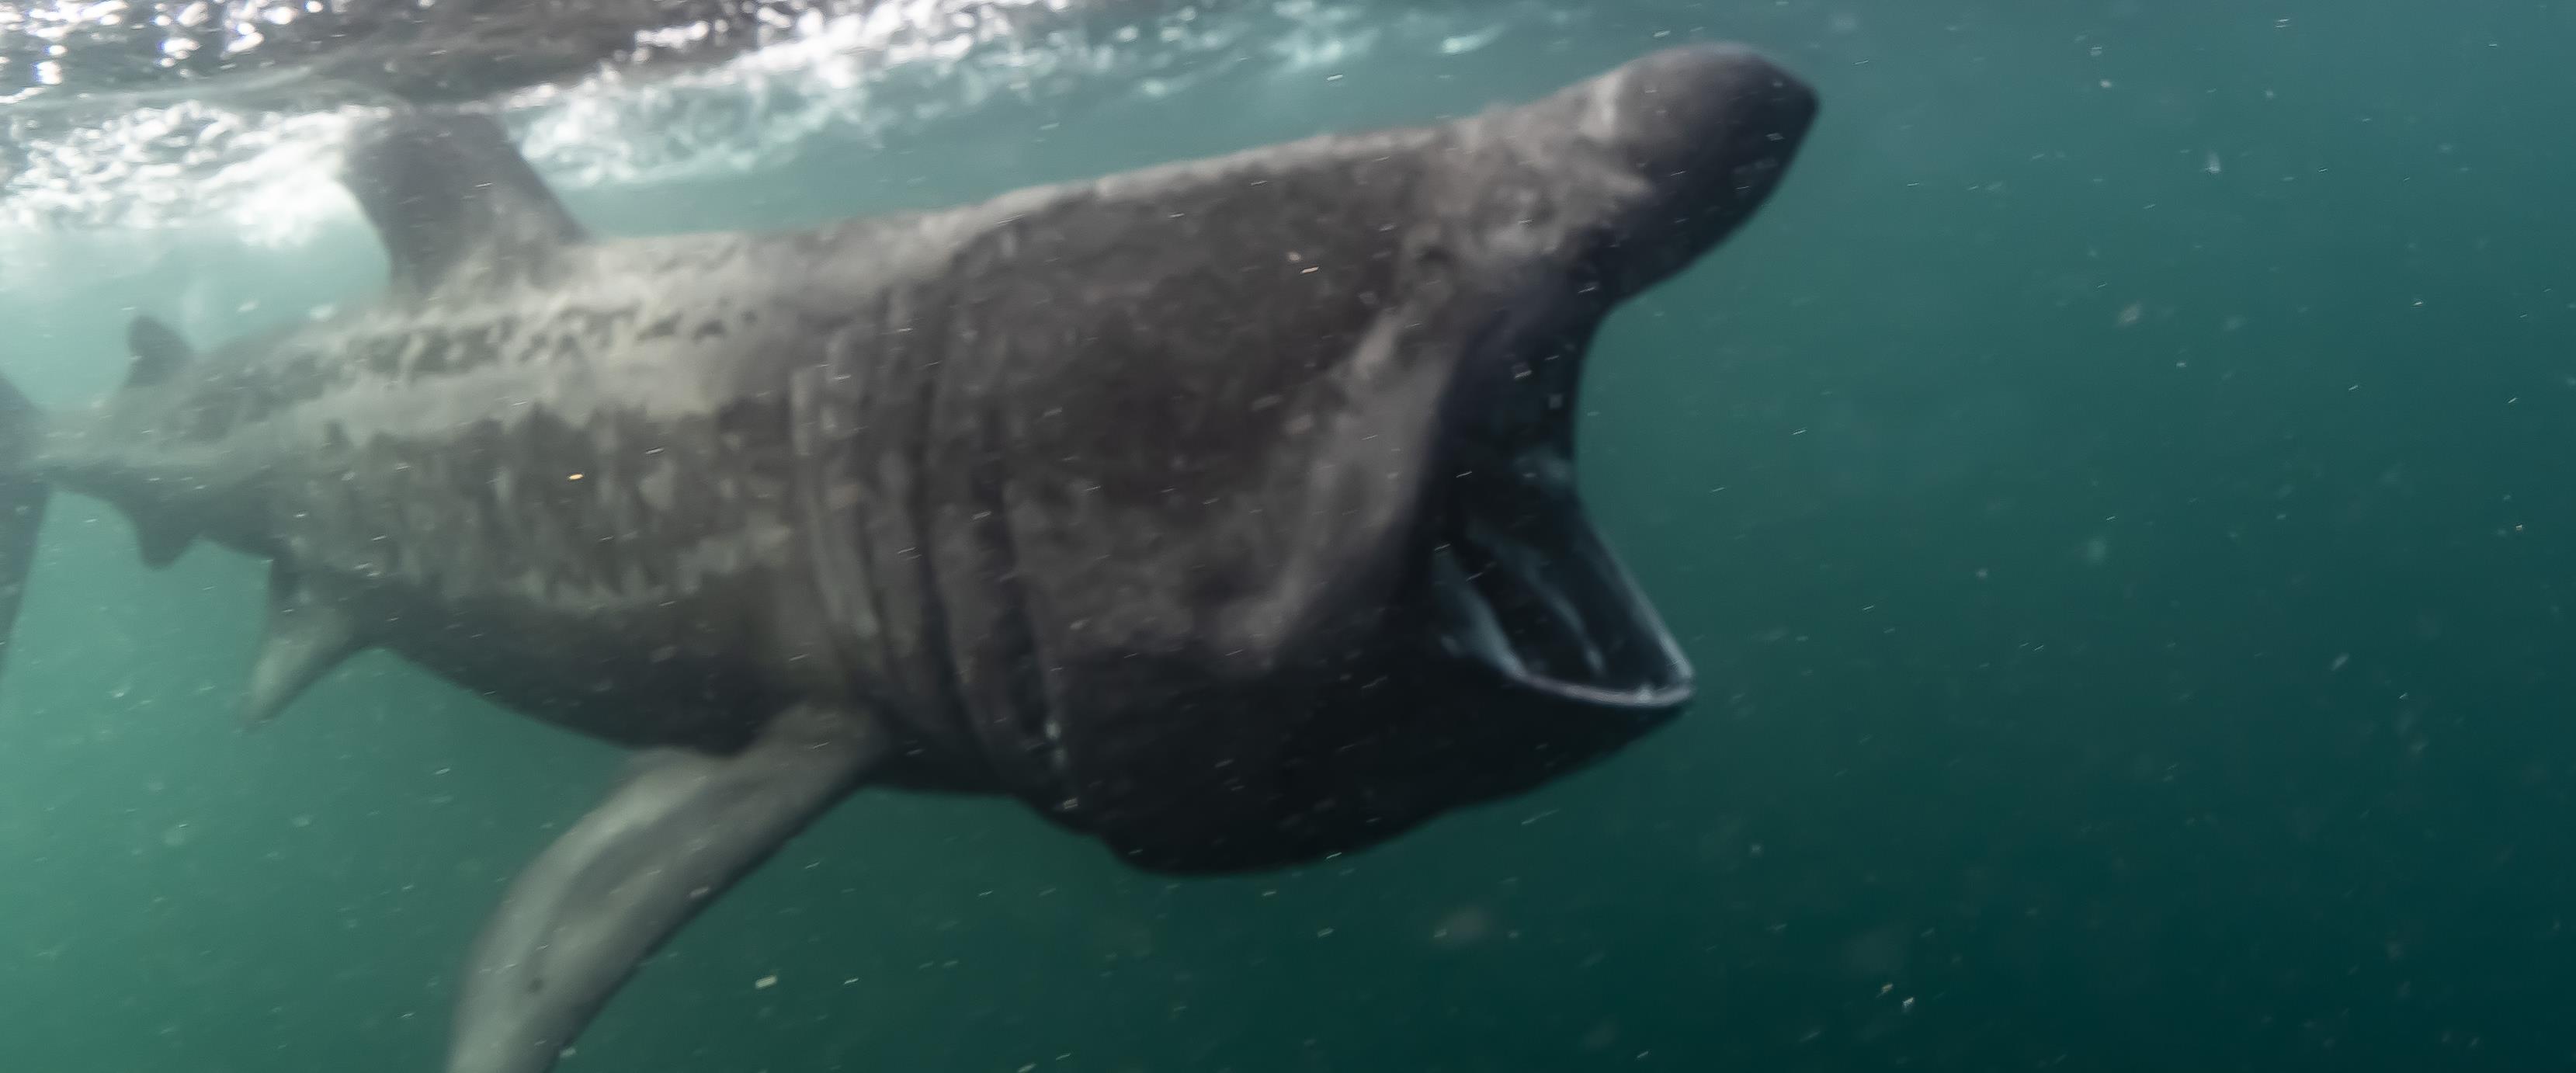 basking shark mouth open